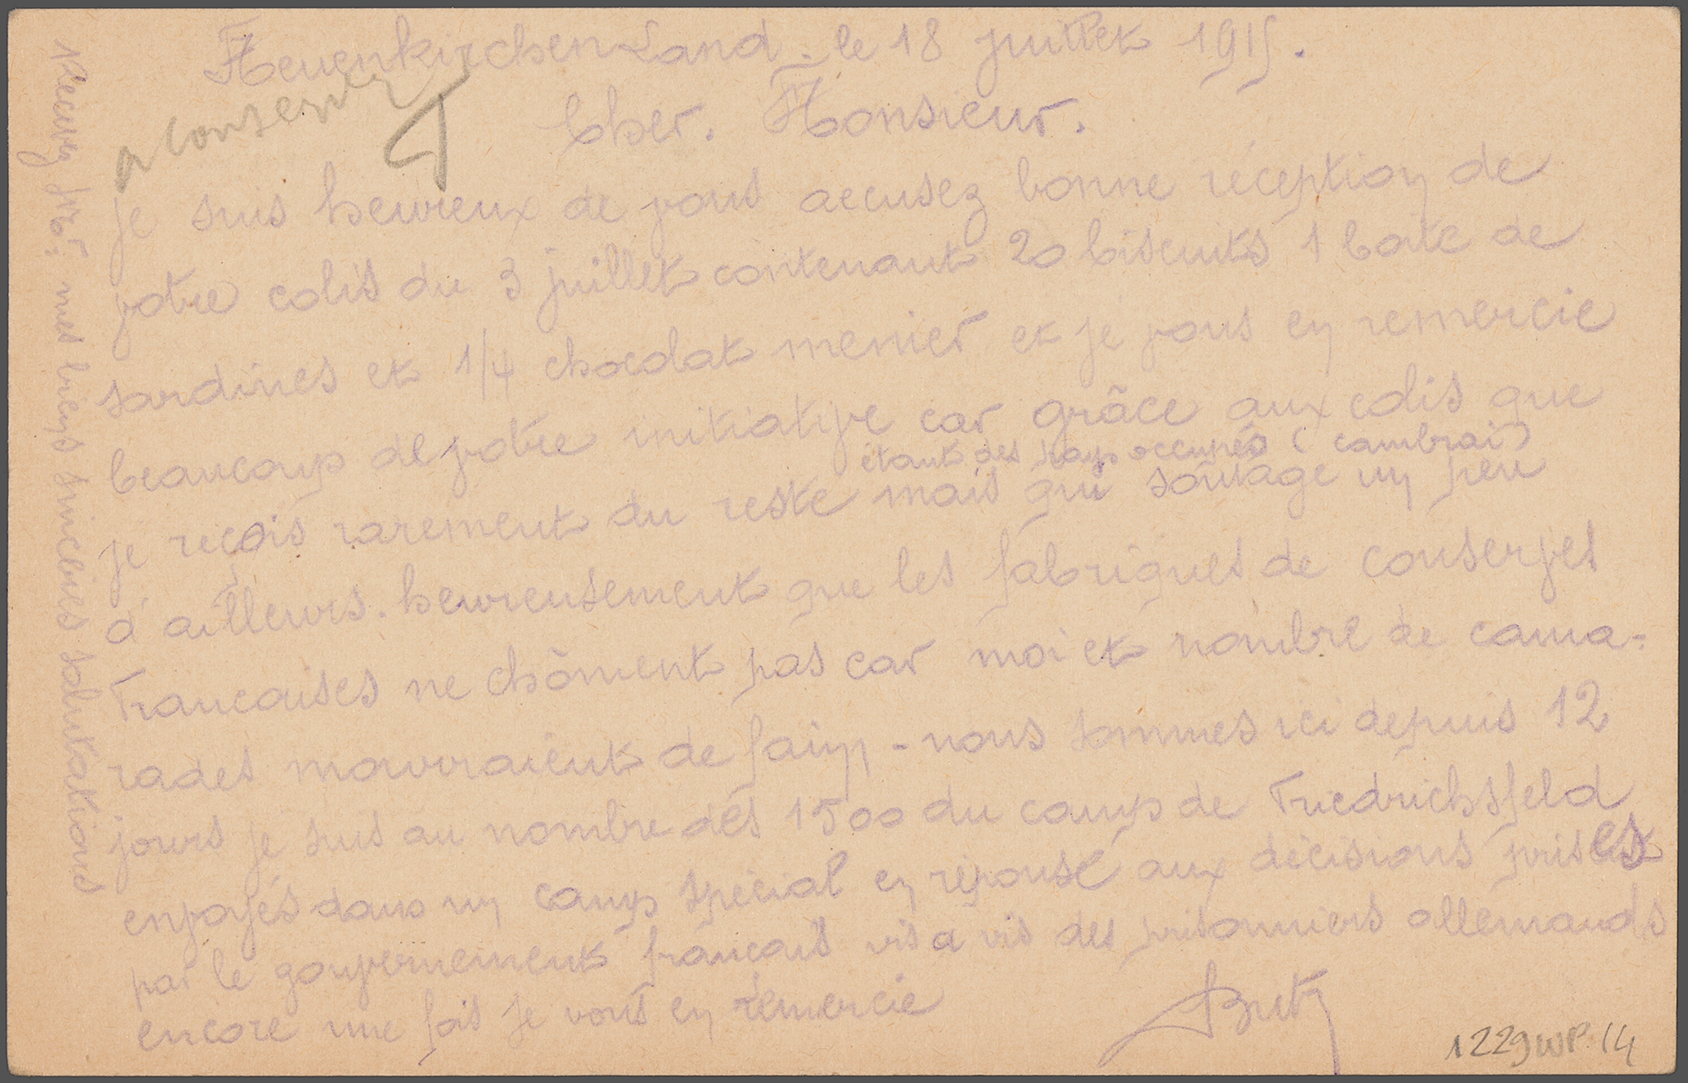 Lettre de remerciement d'un prisonnier du camp de Neuenkirschen à M. Herriot, 18 juillet 1915 - 1229wp/14